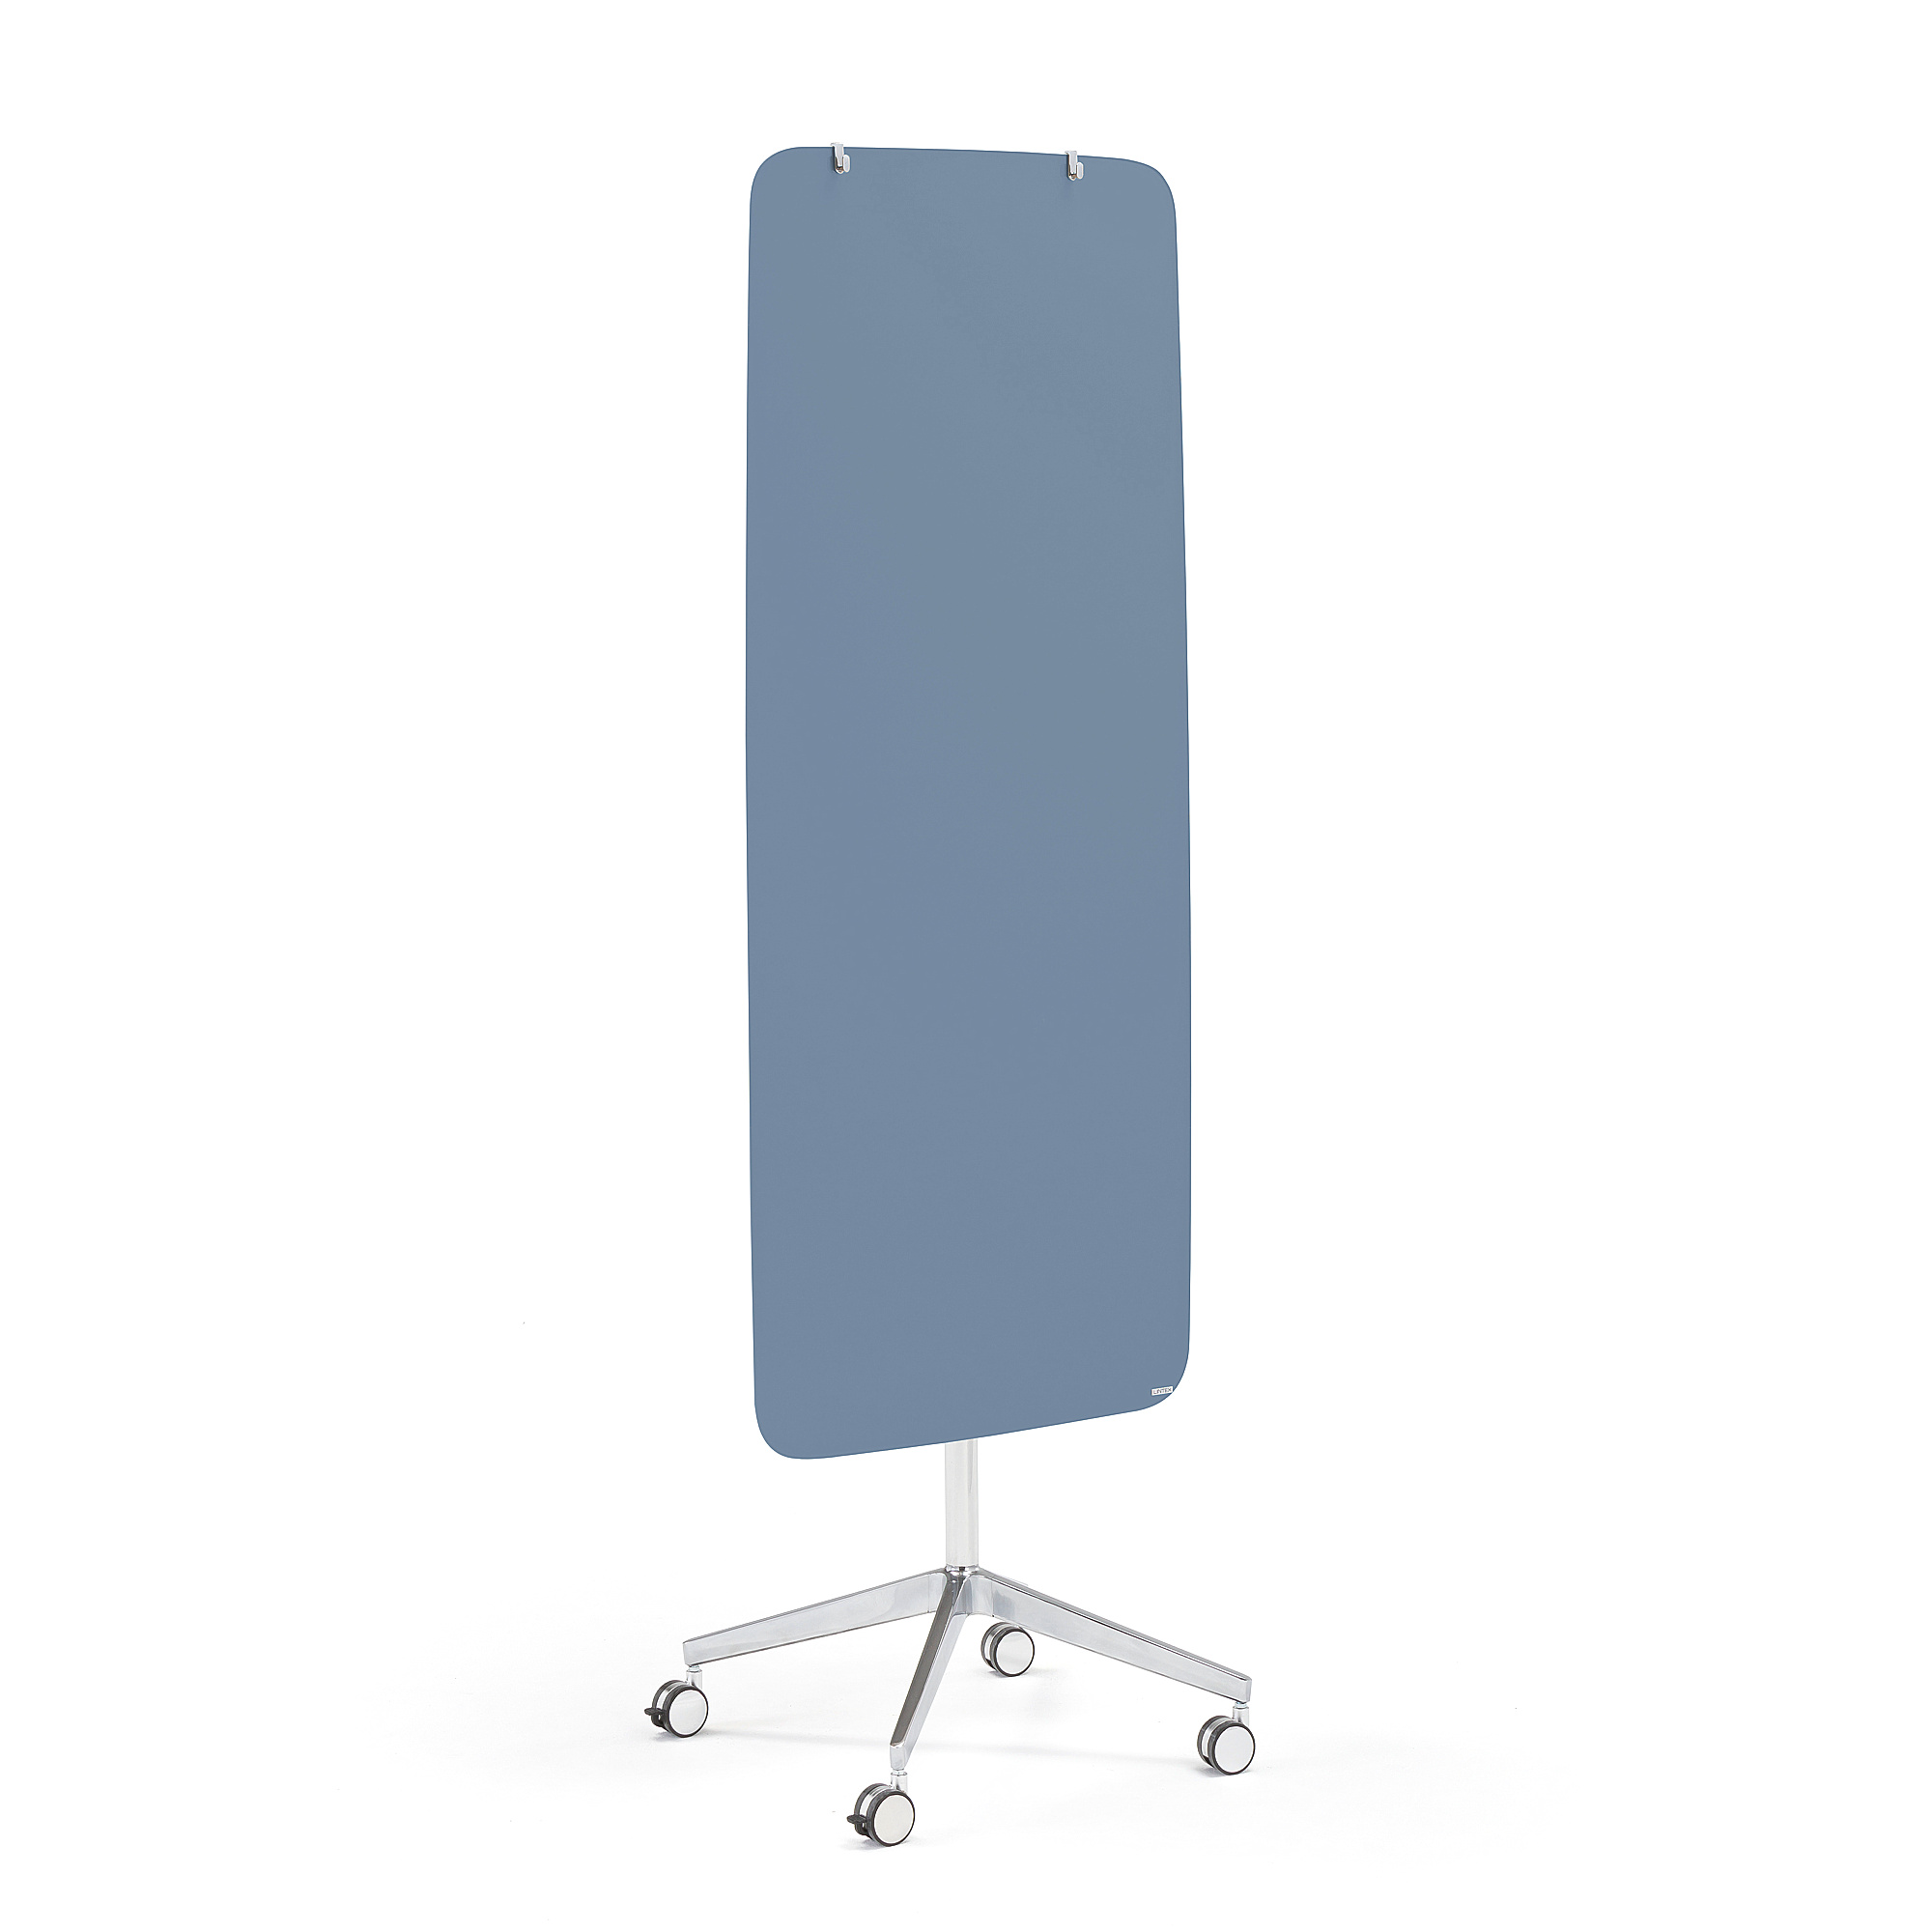 Mobilní skleněná tabule STELLA, magnetická, kulaté rohy, pastelově modrá